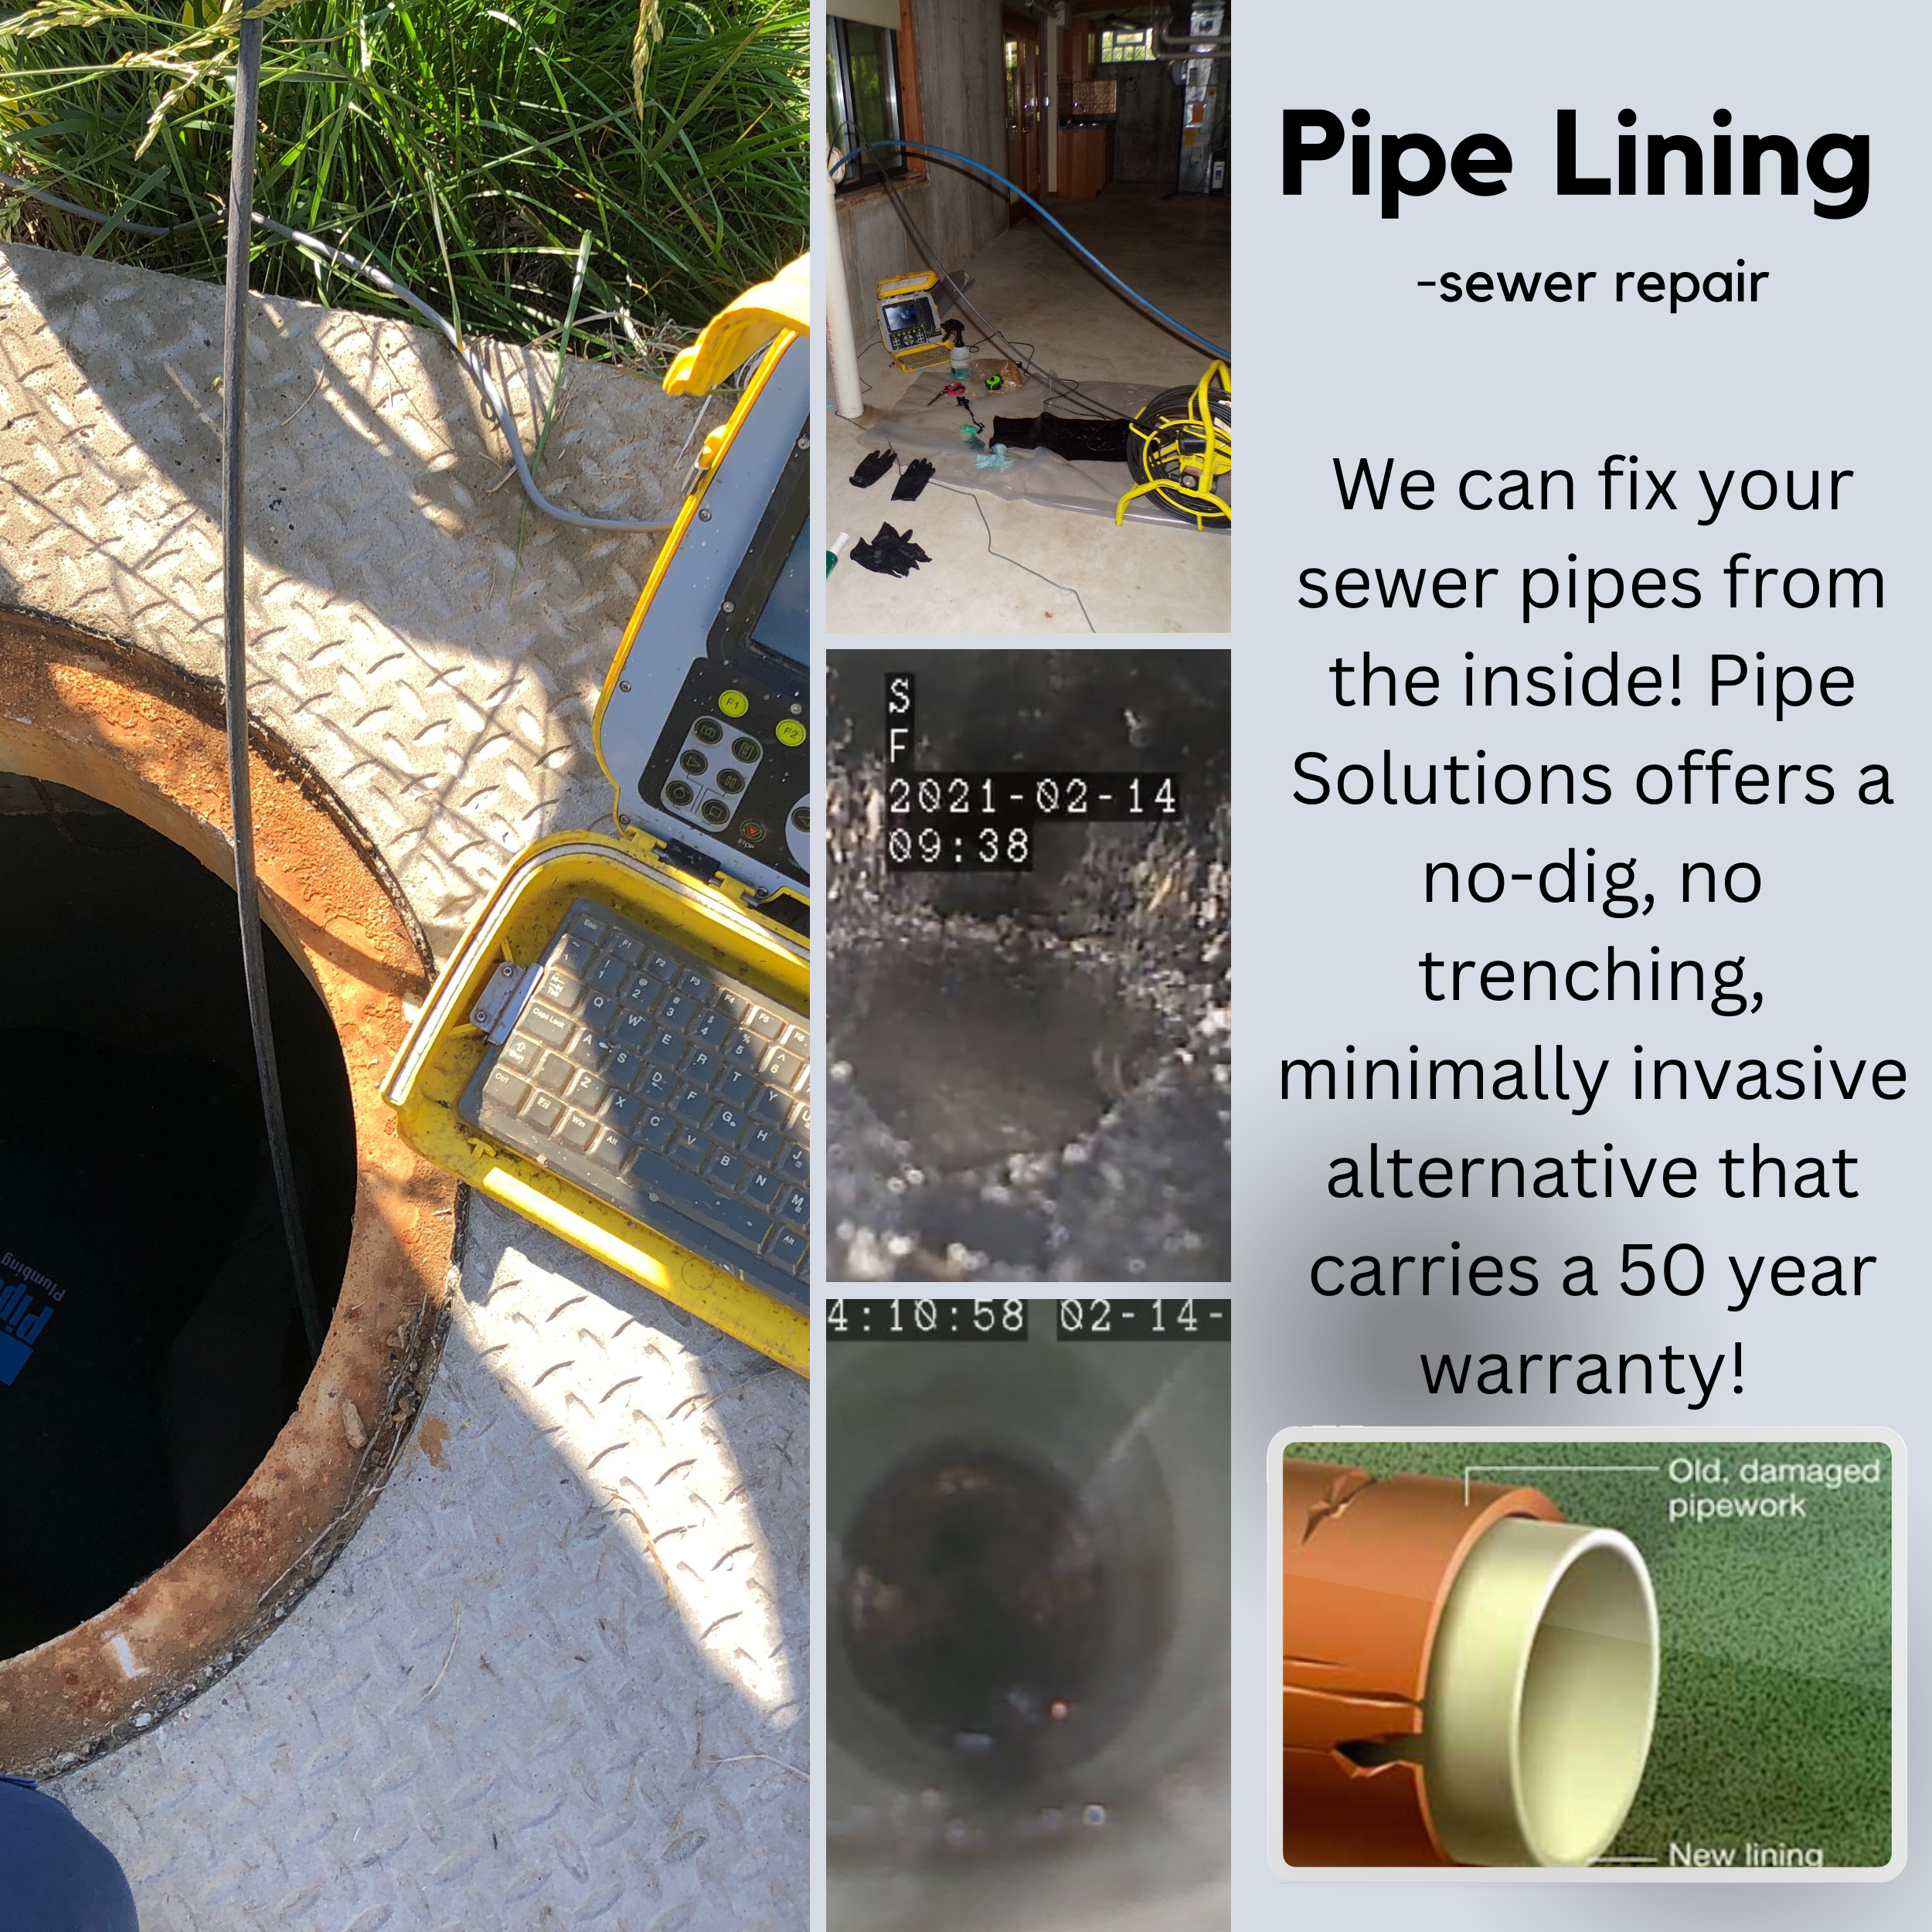 Pipe Lining- sewer repair